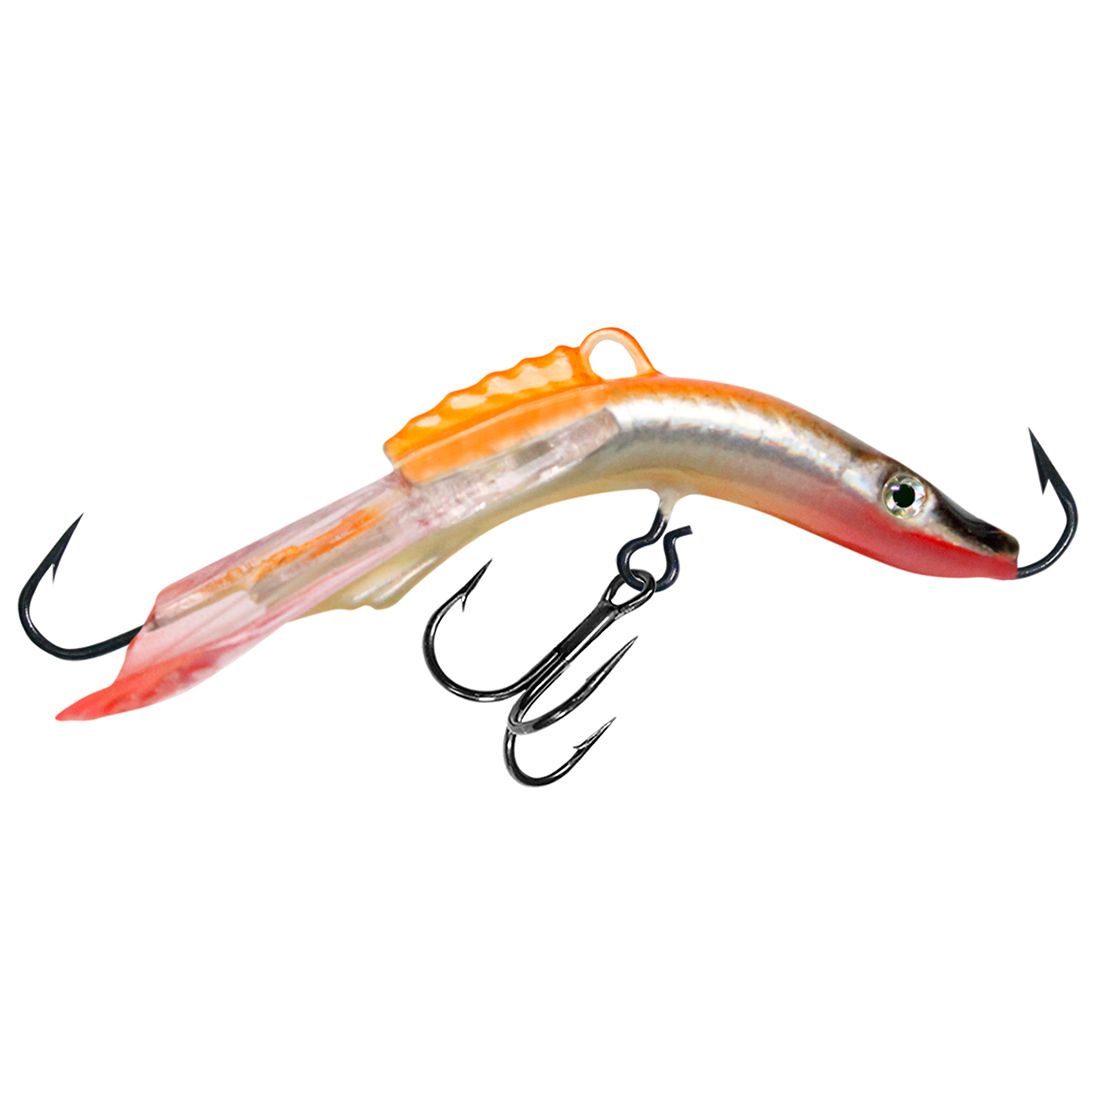 Балансир для рыбалки AQUA ACROBAT-3 50mm цвет 102 оранжевая спинка, 1 штука